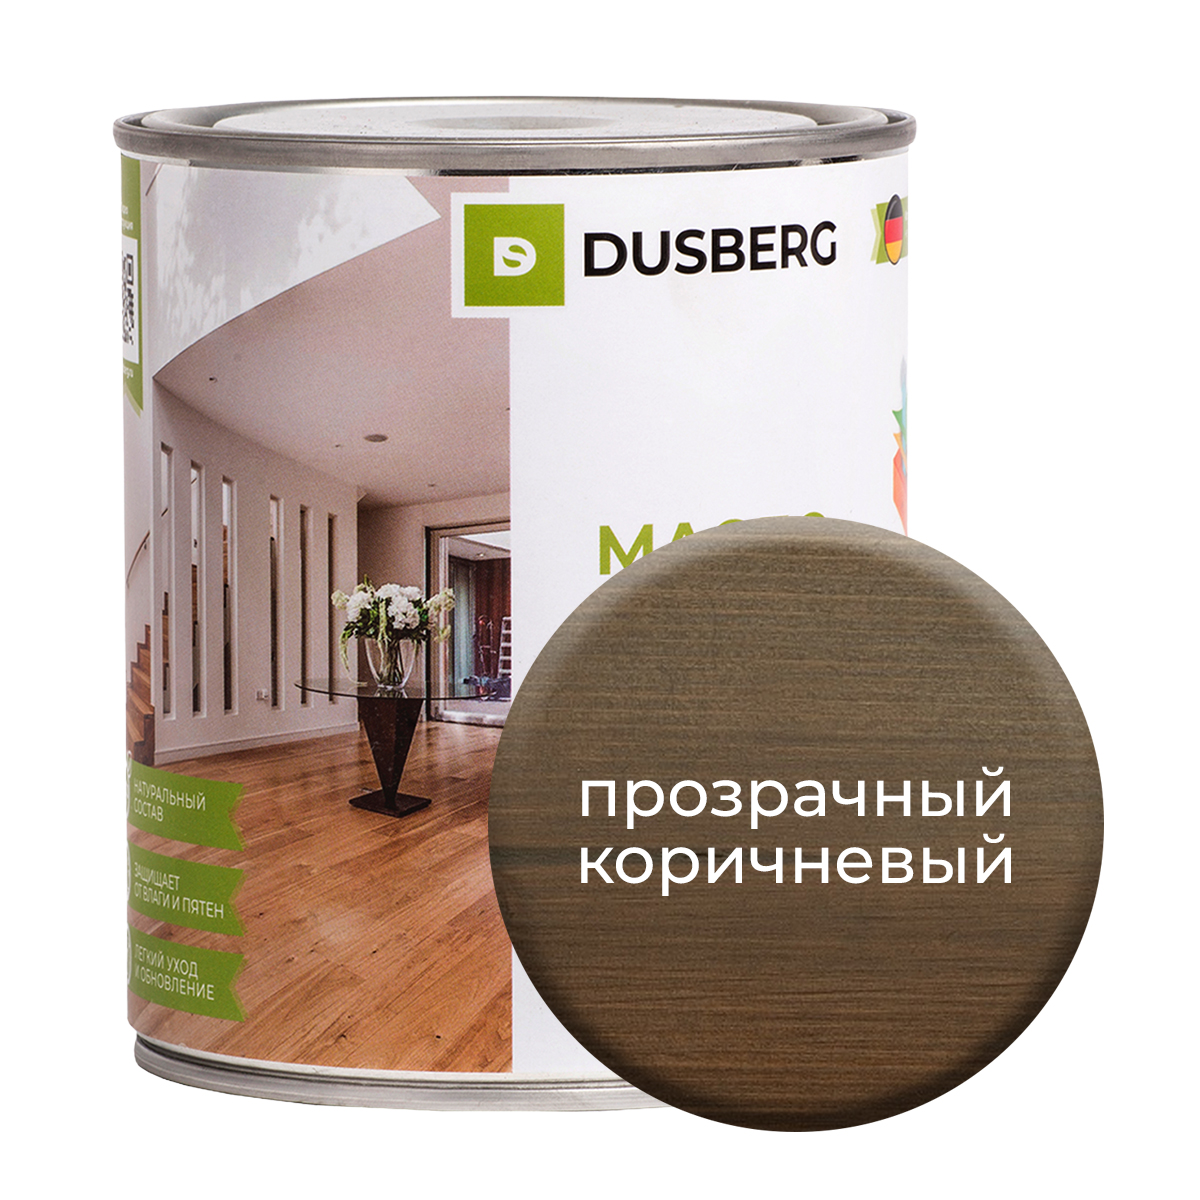 Масло Dusberg для стен на бесцветной основе, 750 мл Прозрачный коричневый масло dusberg для дерева на бесцветной основе 750 мл светло коричневый